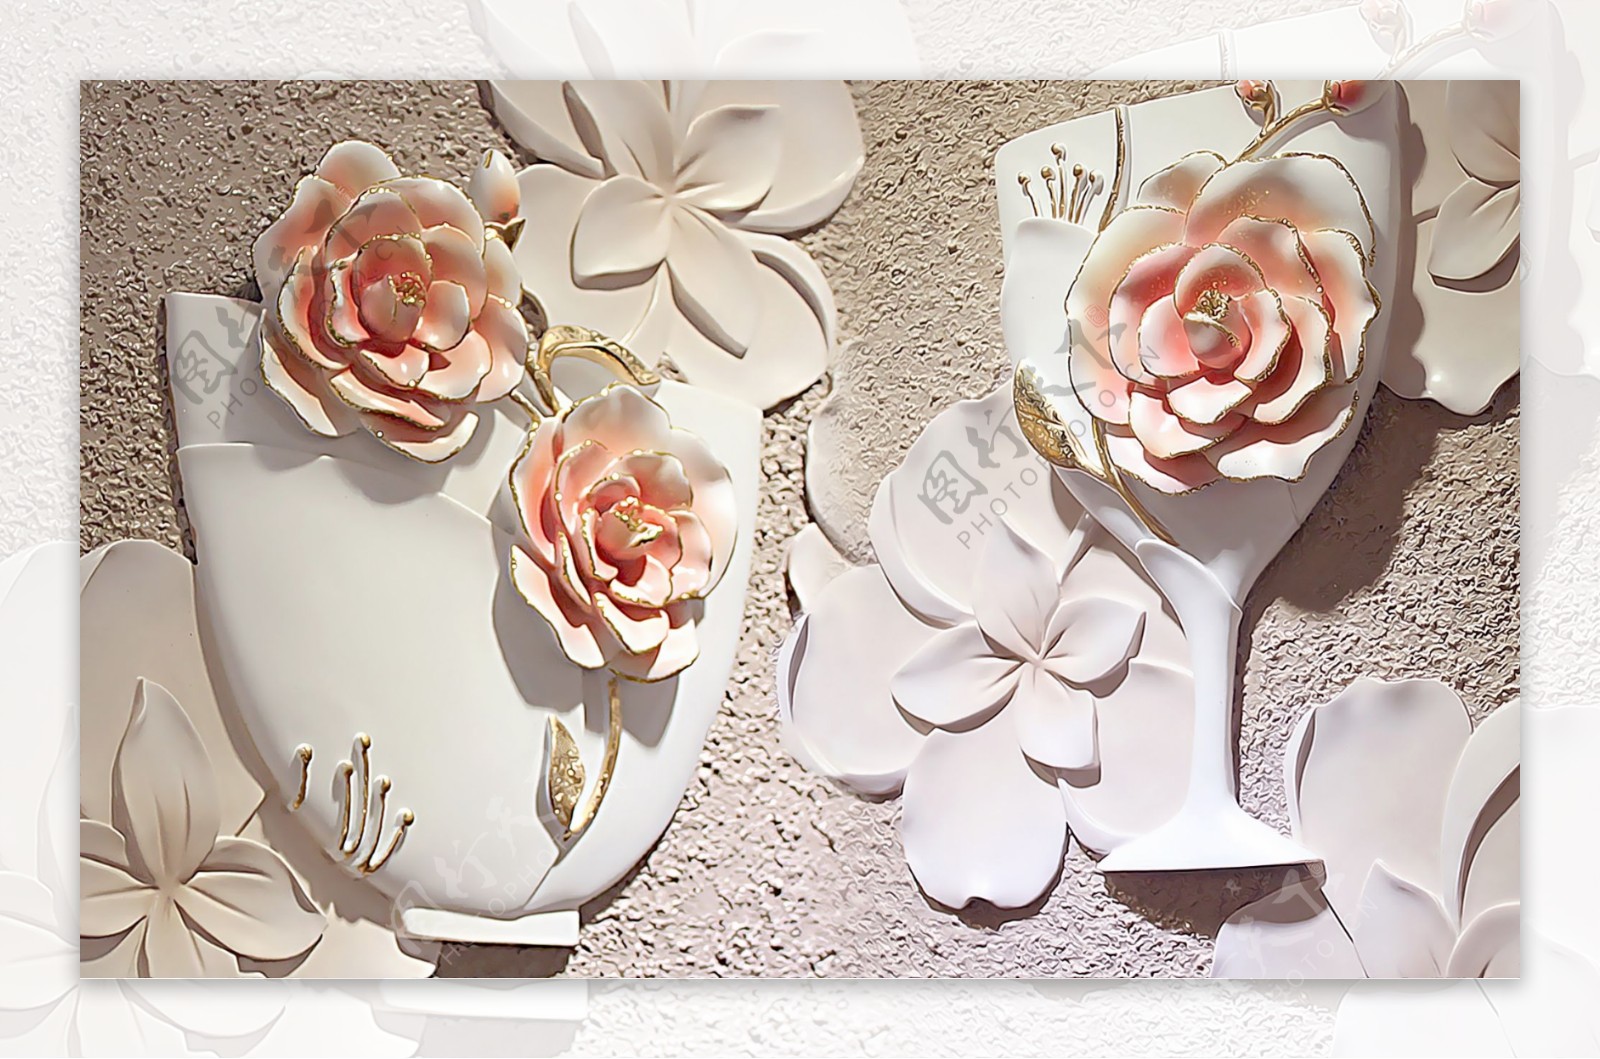 立体玫瑰花瓶浮雕装饰画图片